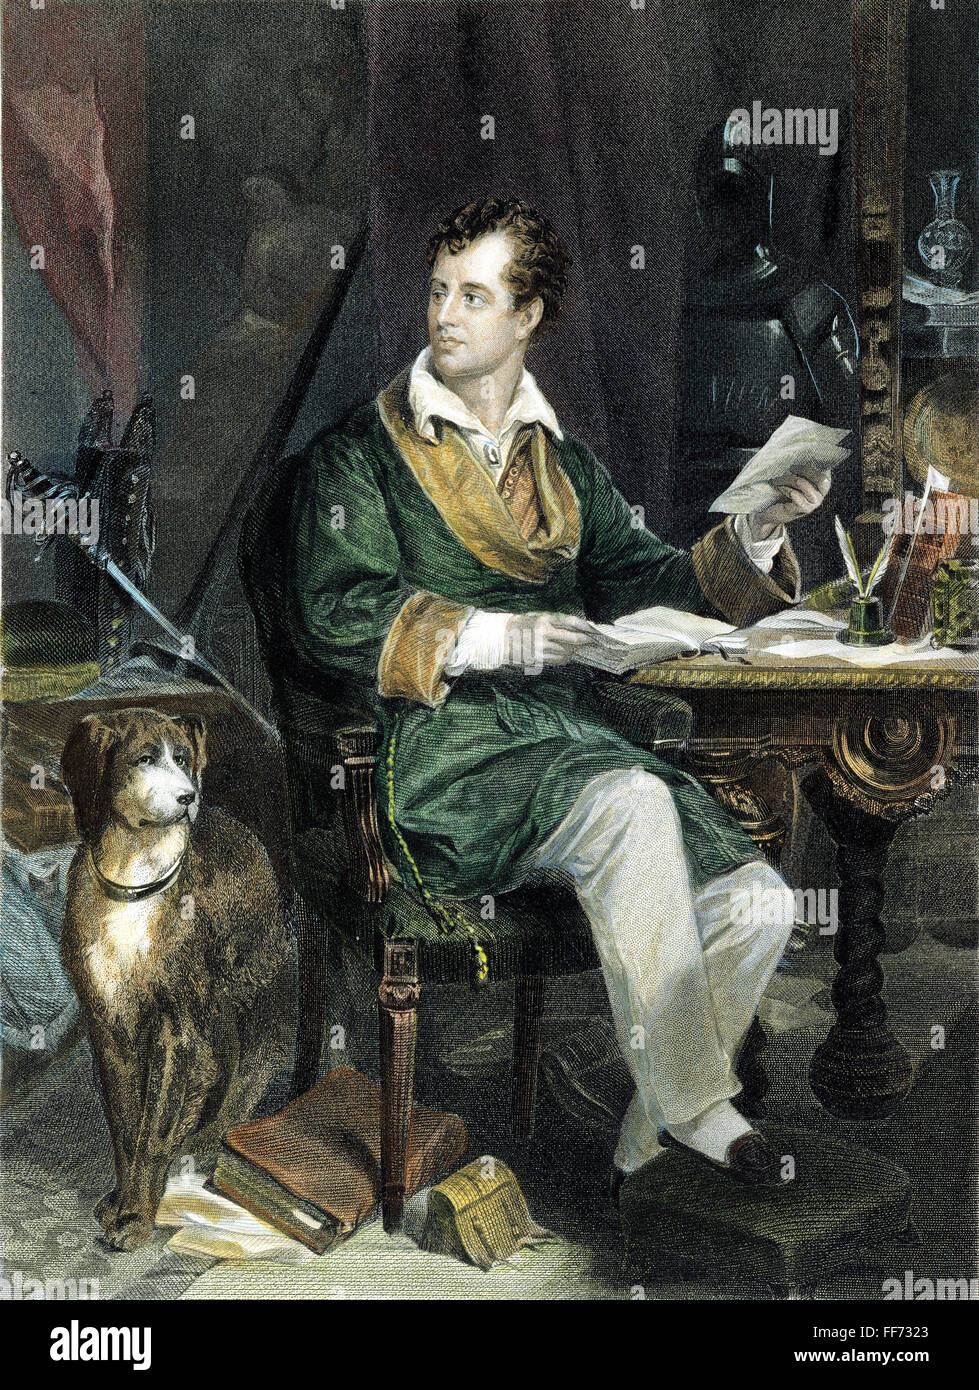 GEORGE GORDON BYRON /n(1788-1824). Sixième Baron Byron. Poète anglais. Gravure sur acier, American, 1867, d'après une peinture par Alonzo Chappel. Banque D'Images